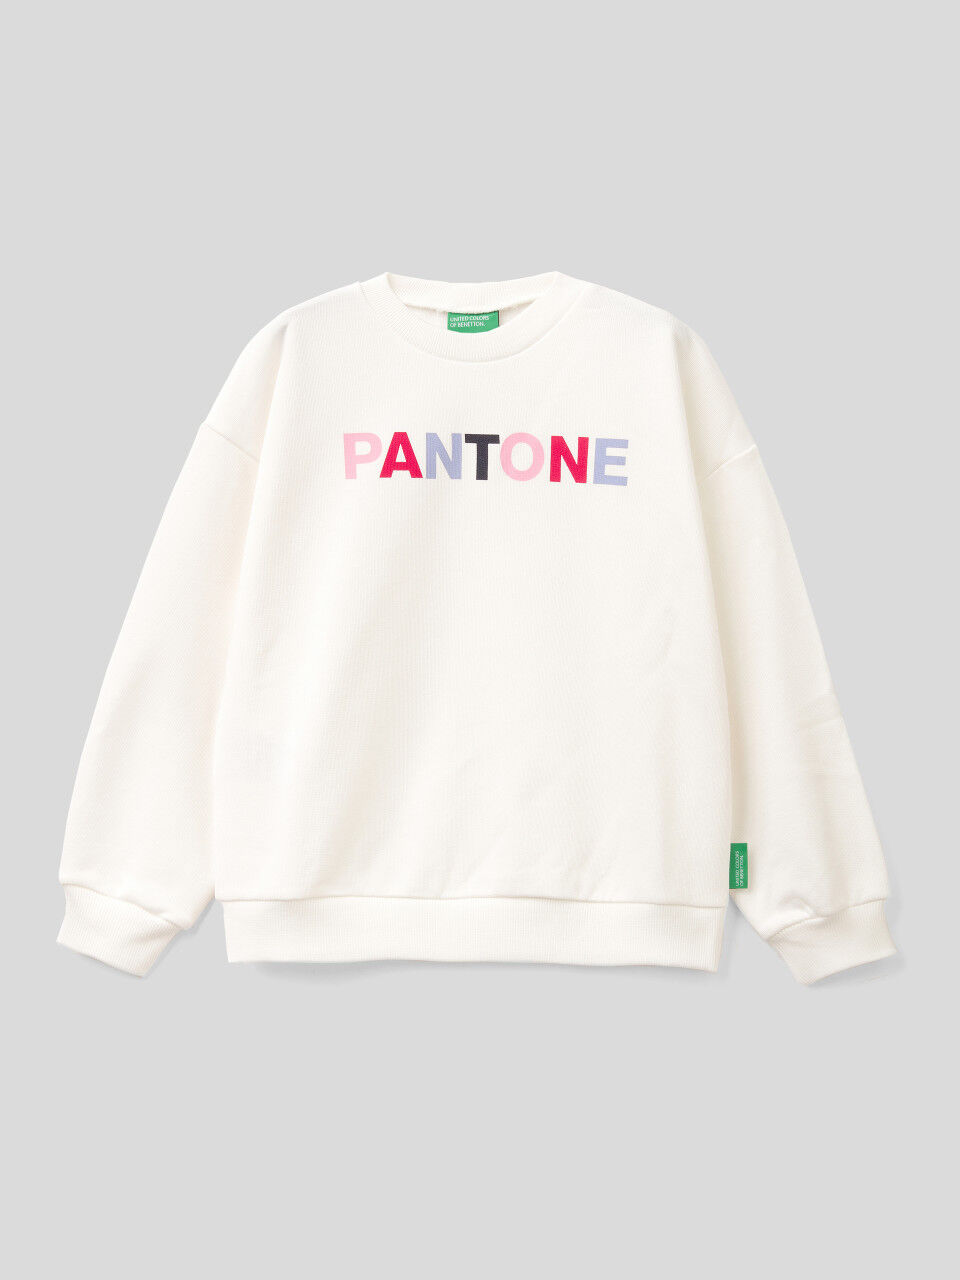 BenettonxPantone™ white crew neck sweatshirt